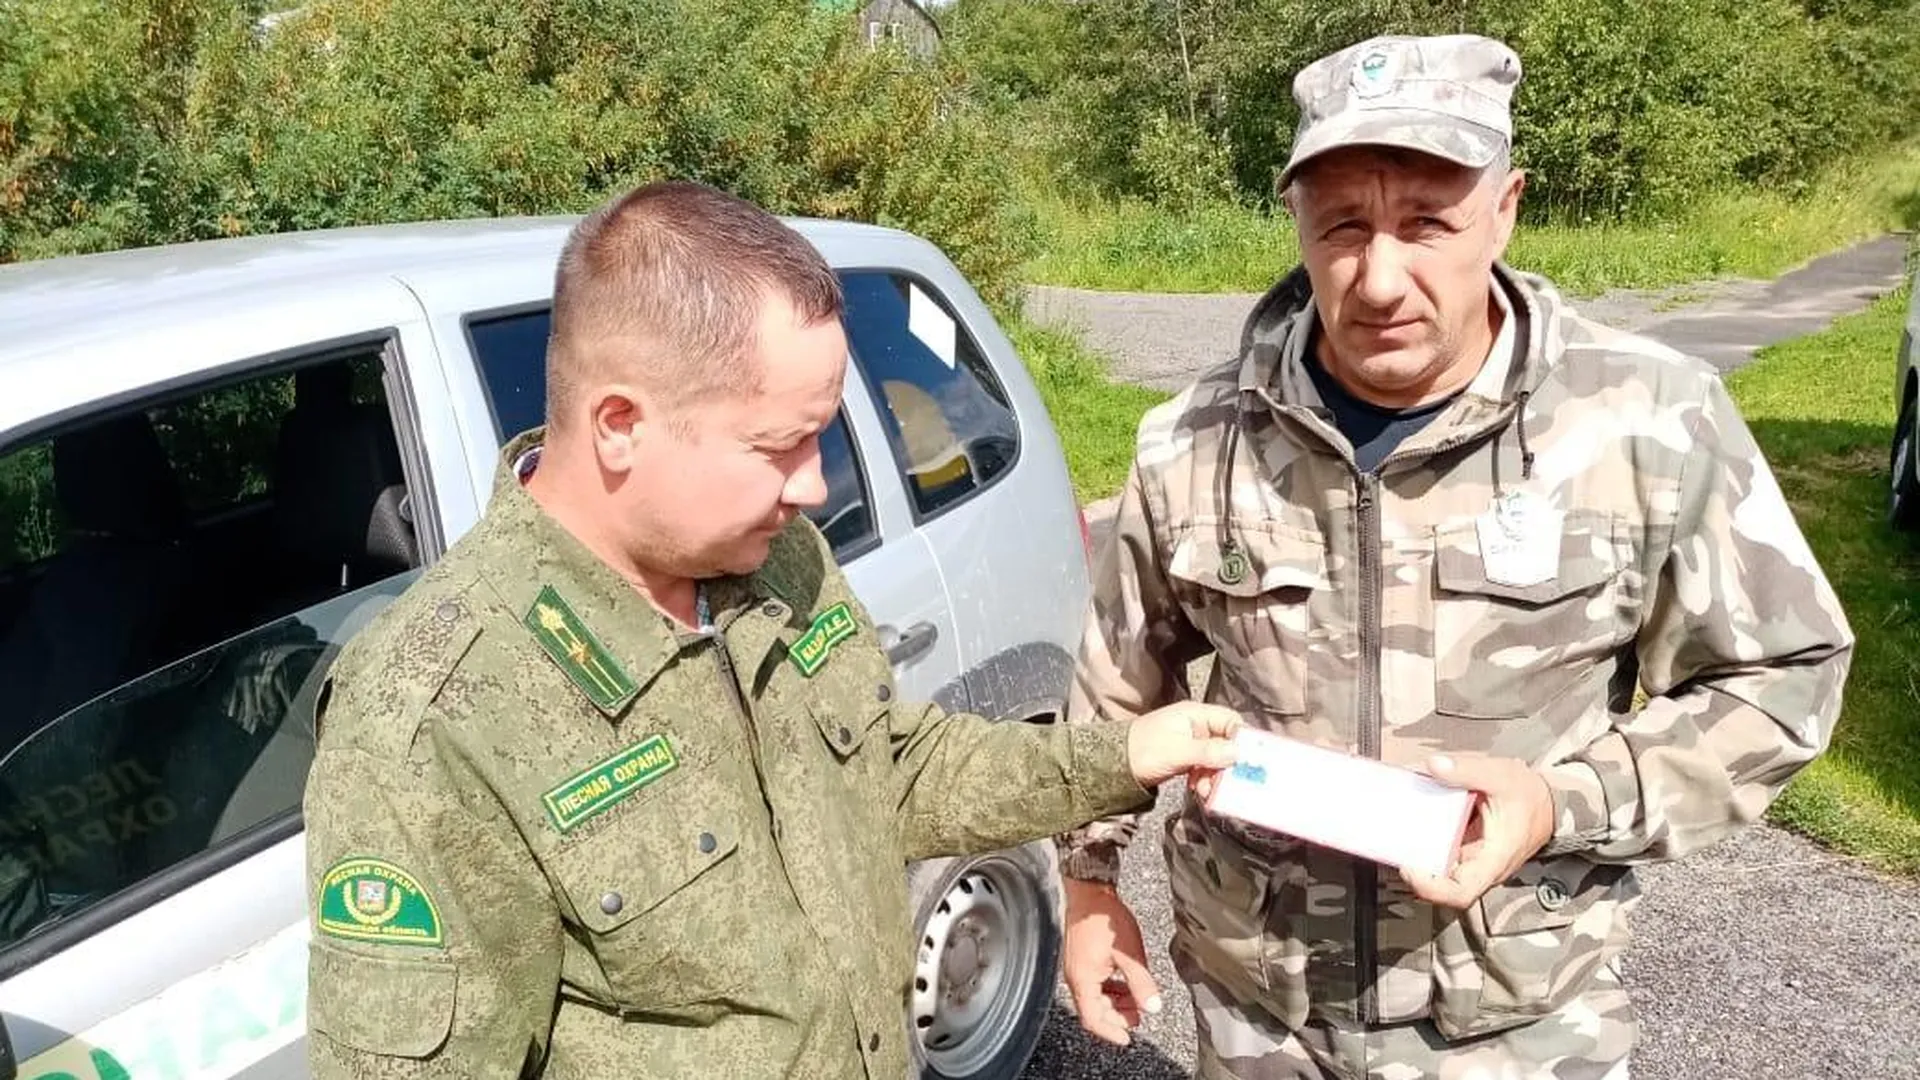 7 добровольцев стали общественными лесными инспекторами в Подмосковье в сентябре